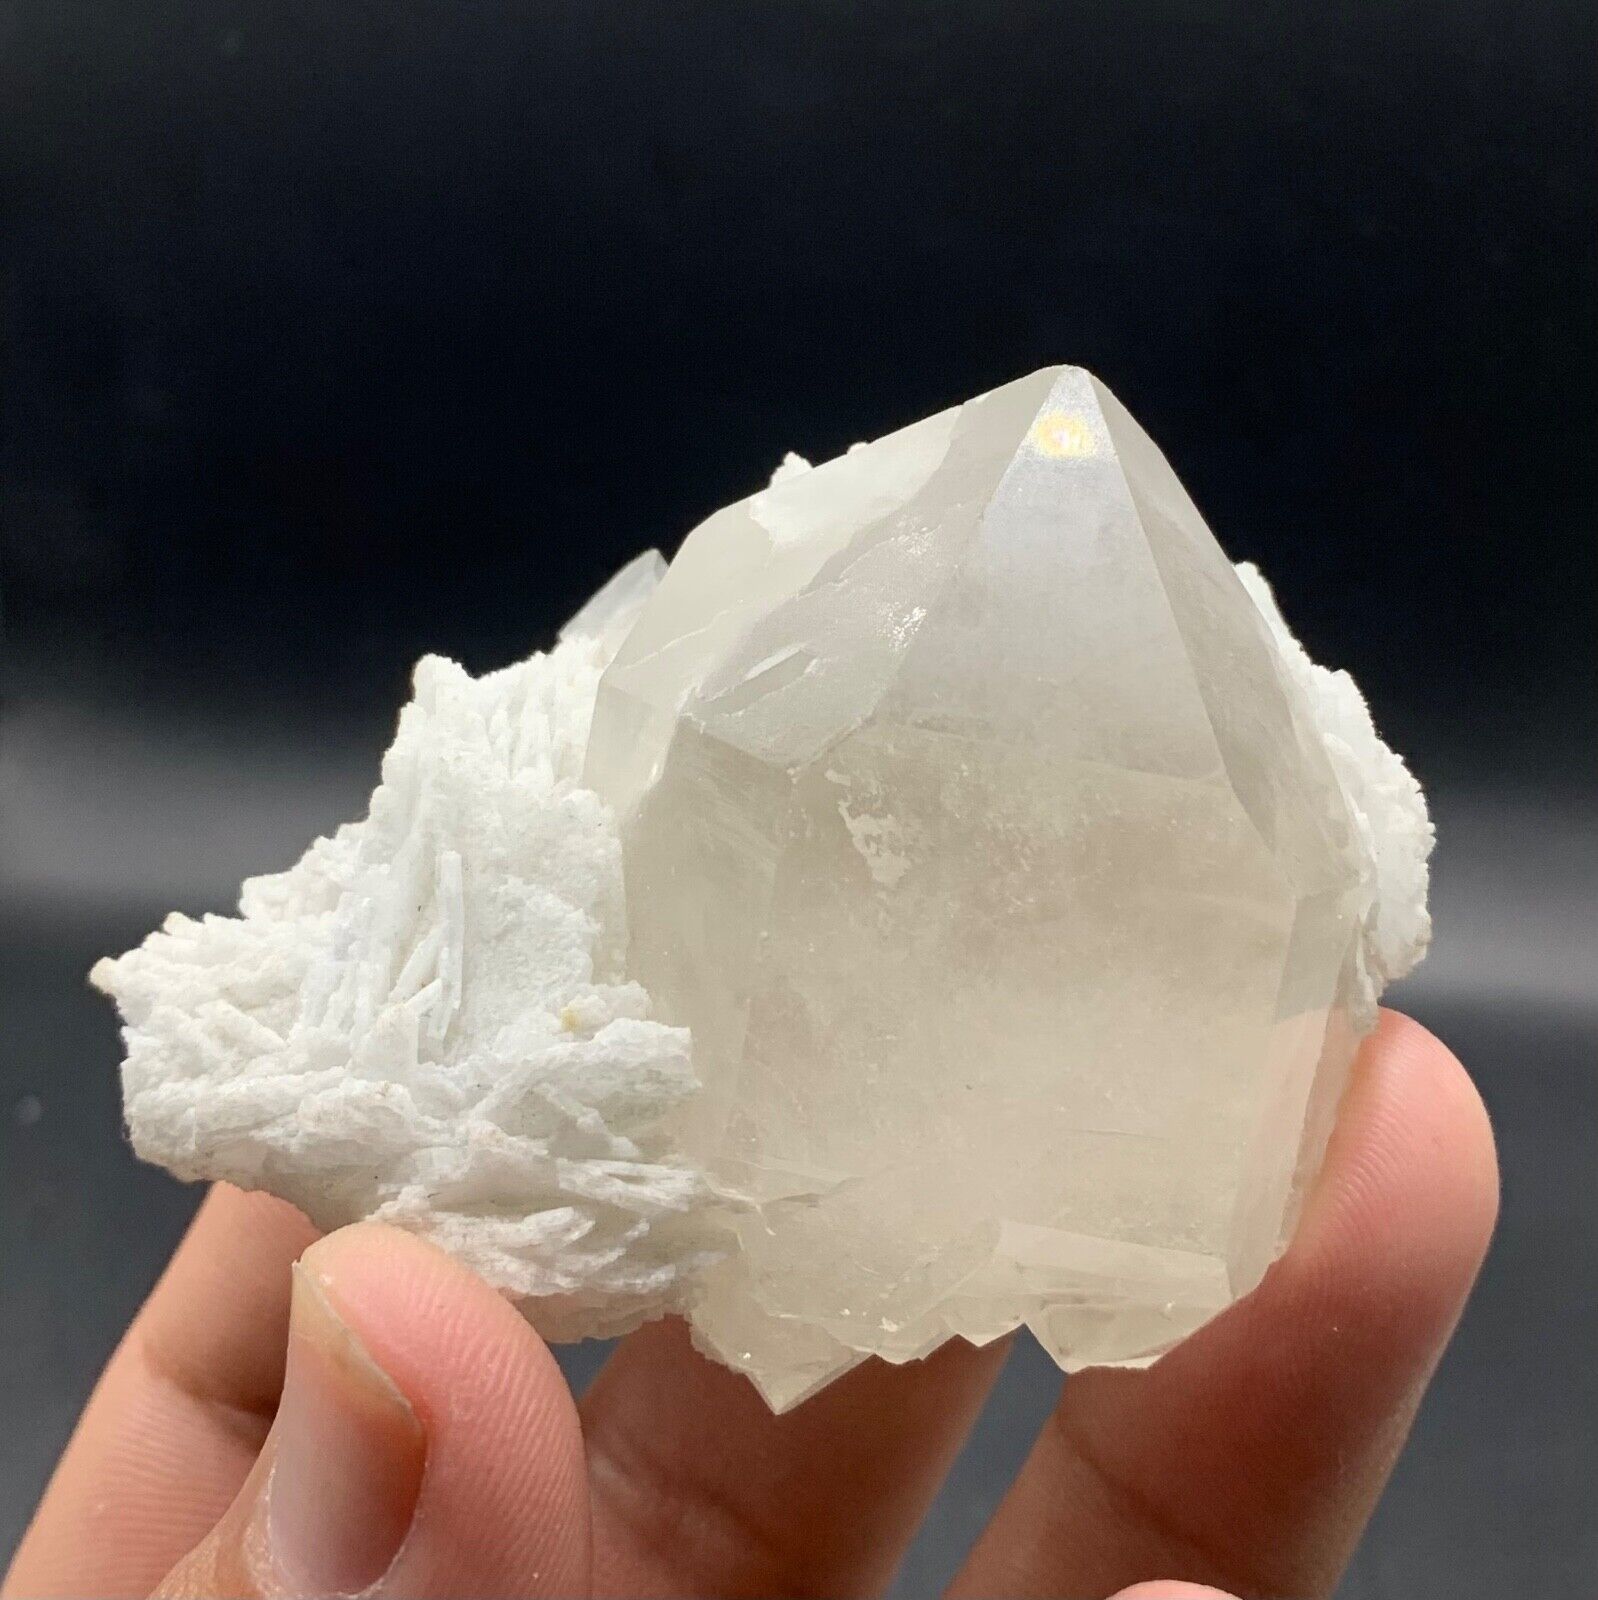 593 ct of Natural beautiful terminated quartz with albite, tourmaline, lepidolit